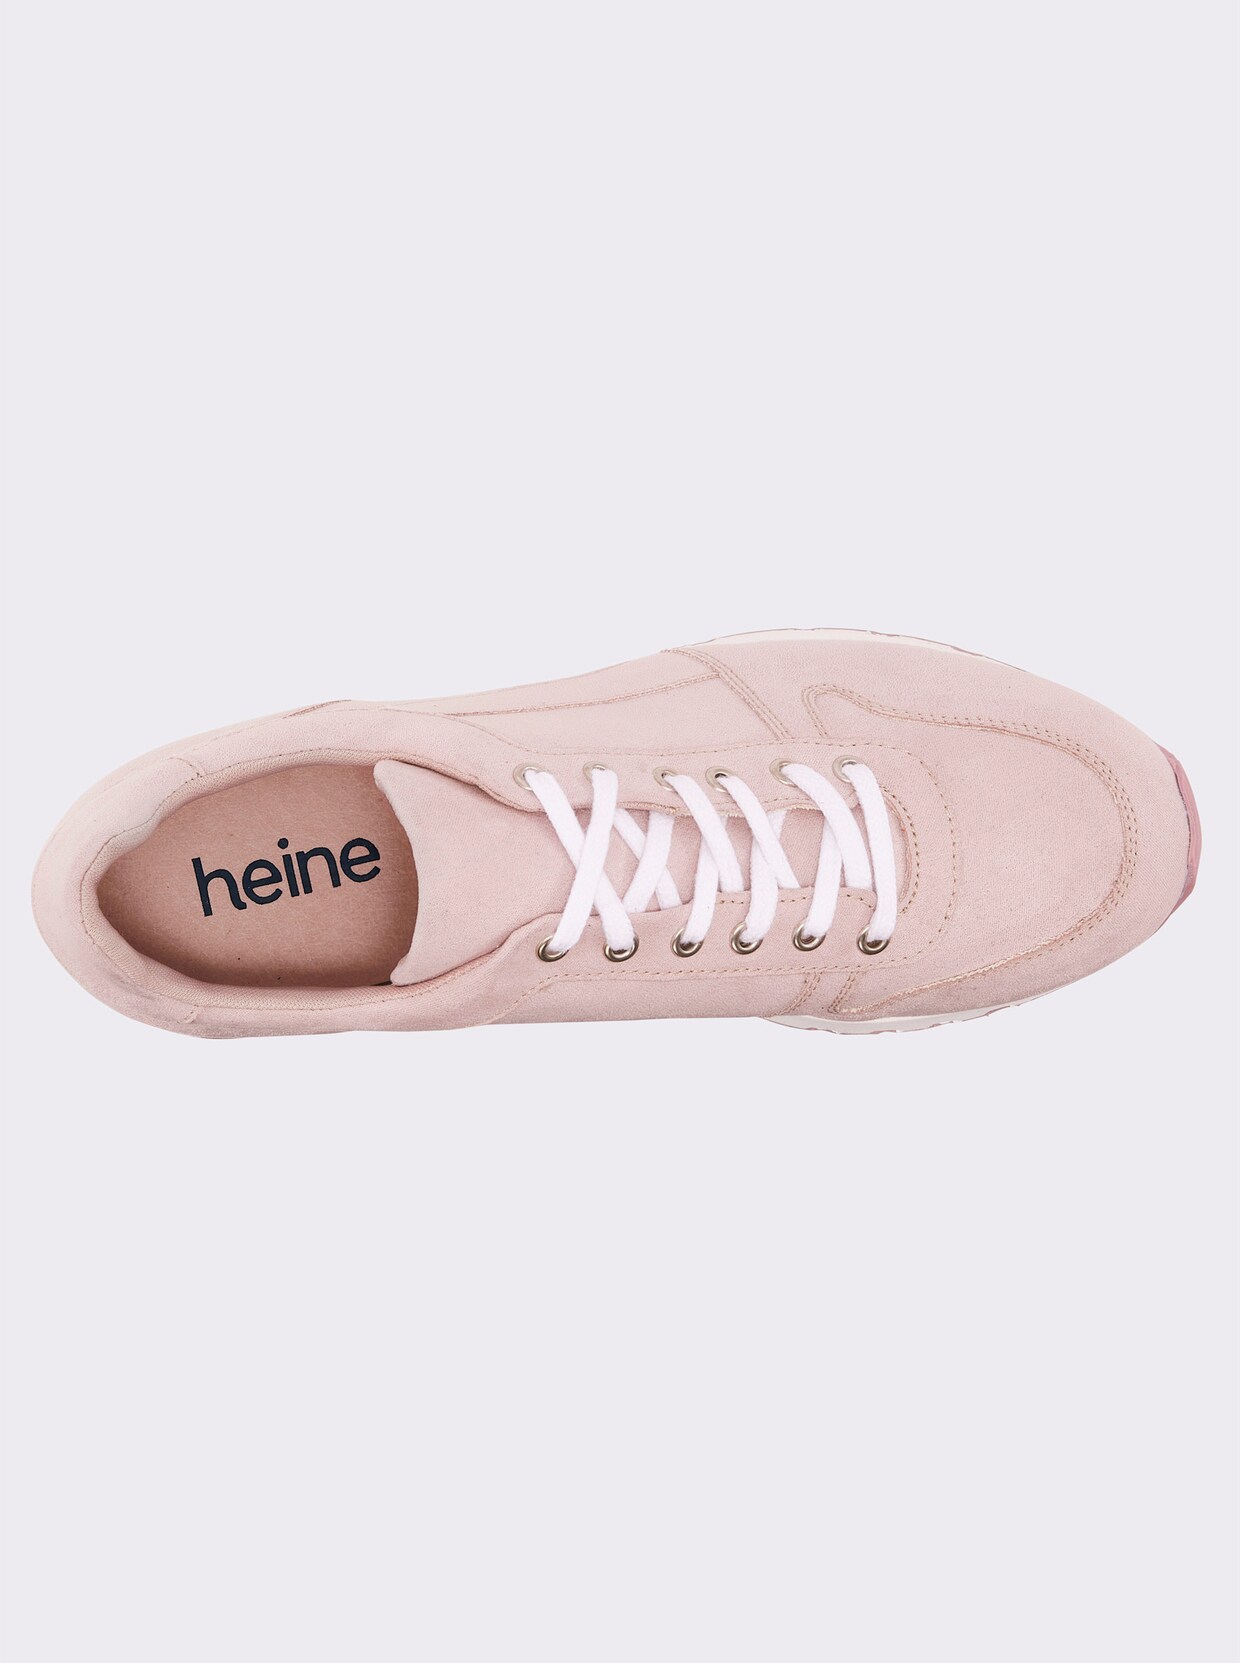 heine Sneaker - roze